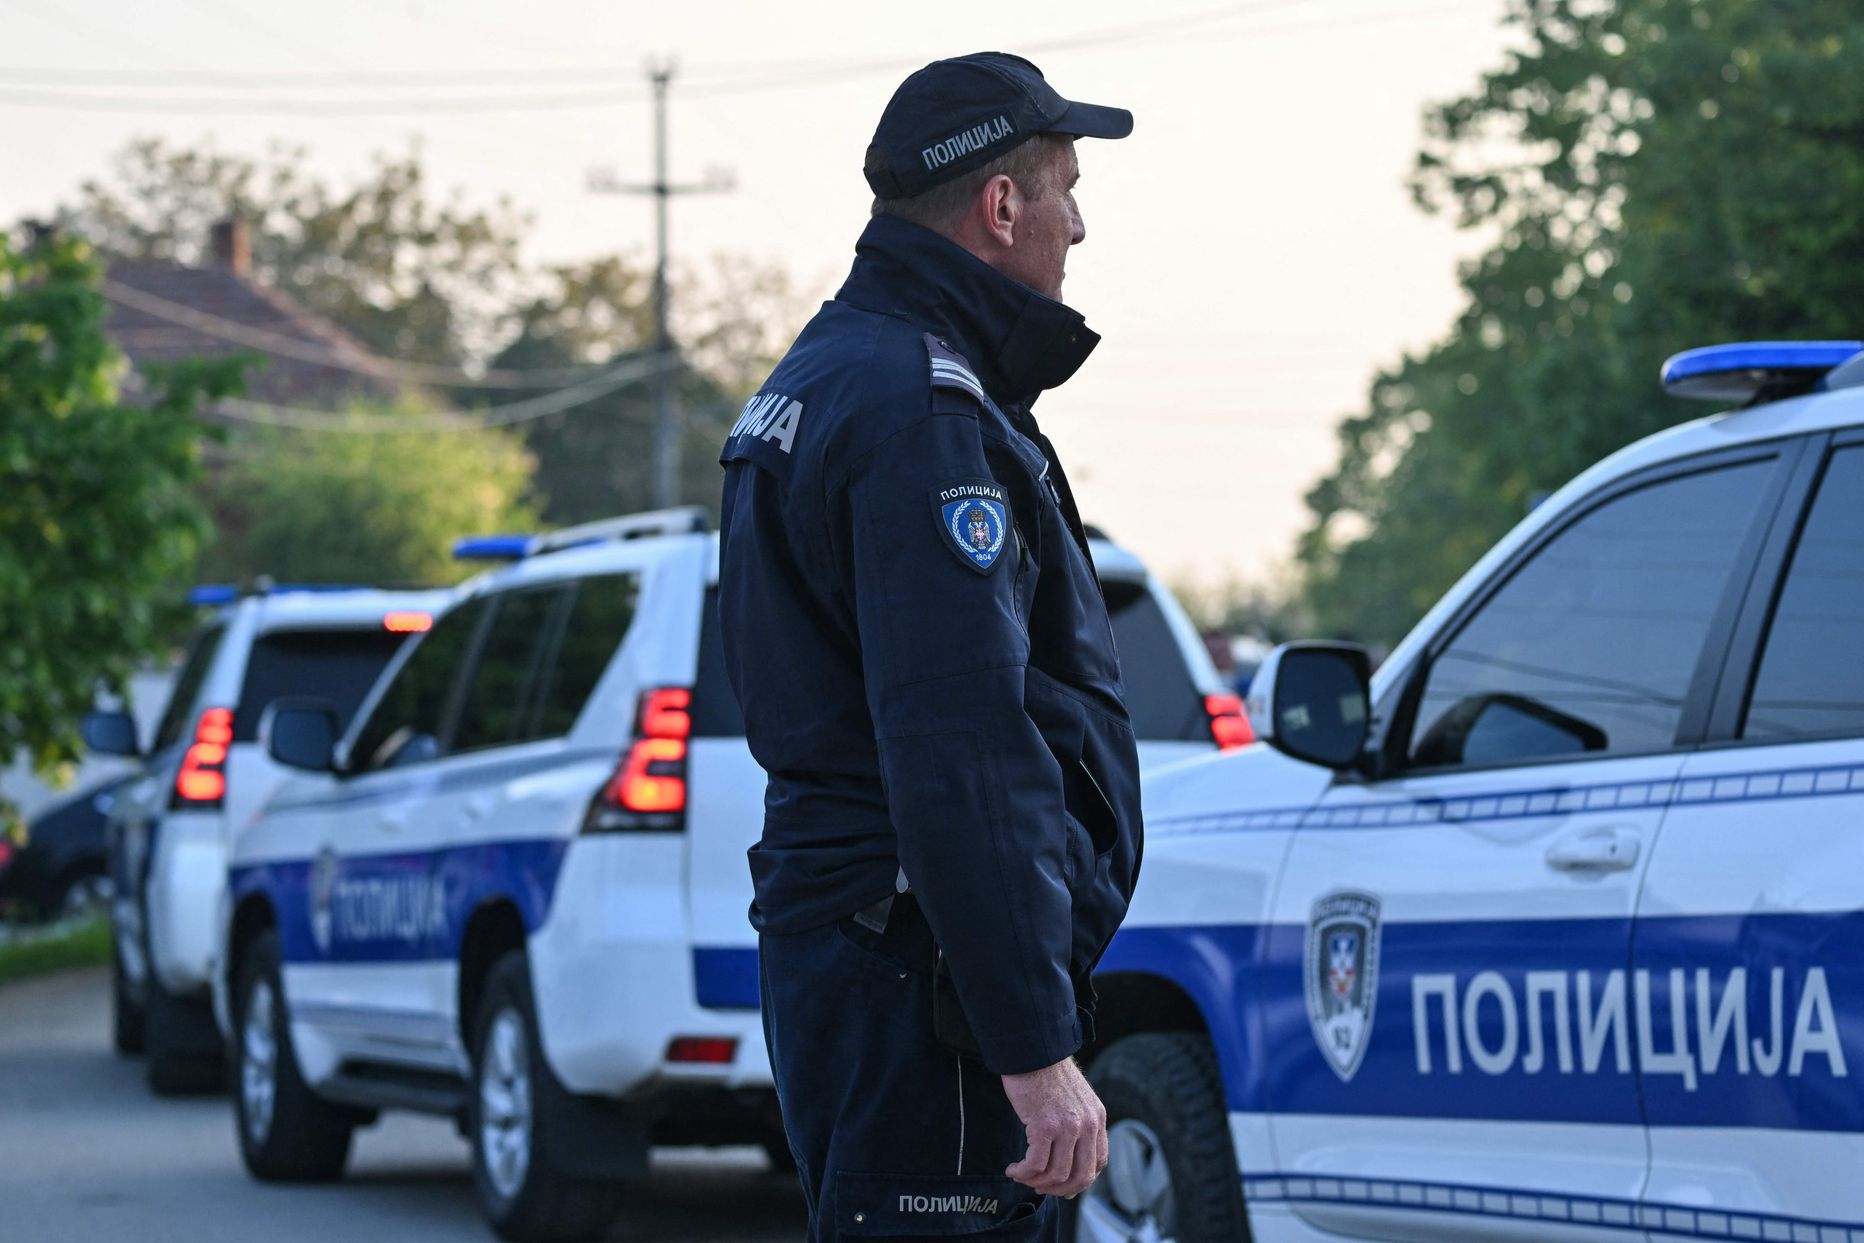 Serbia politsei.